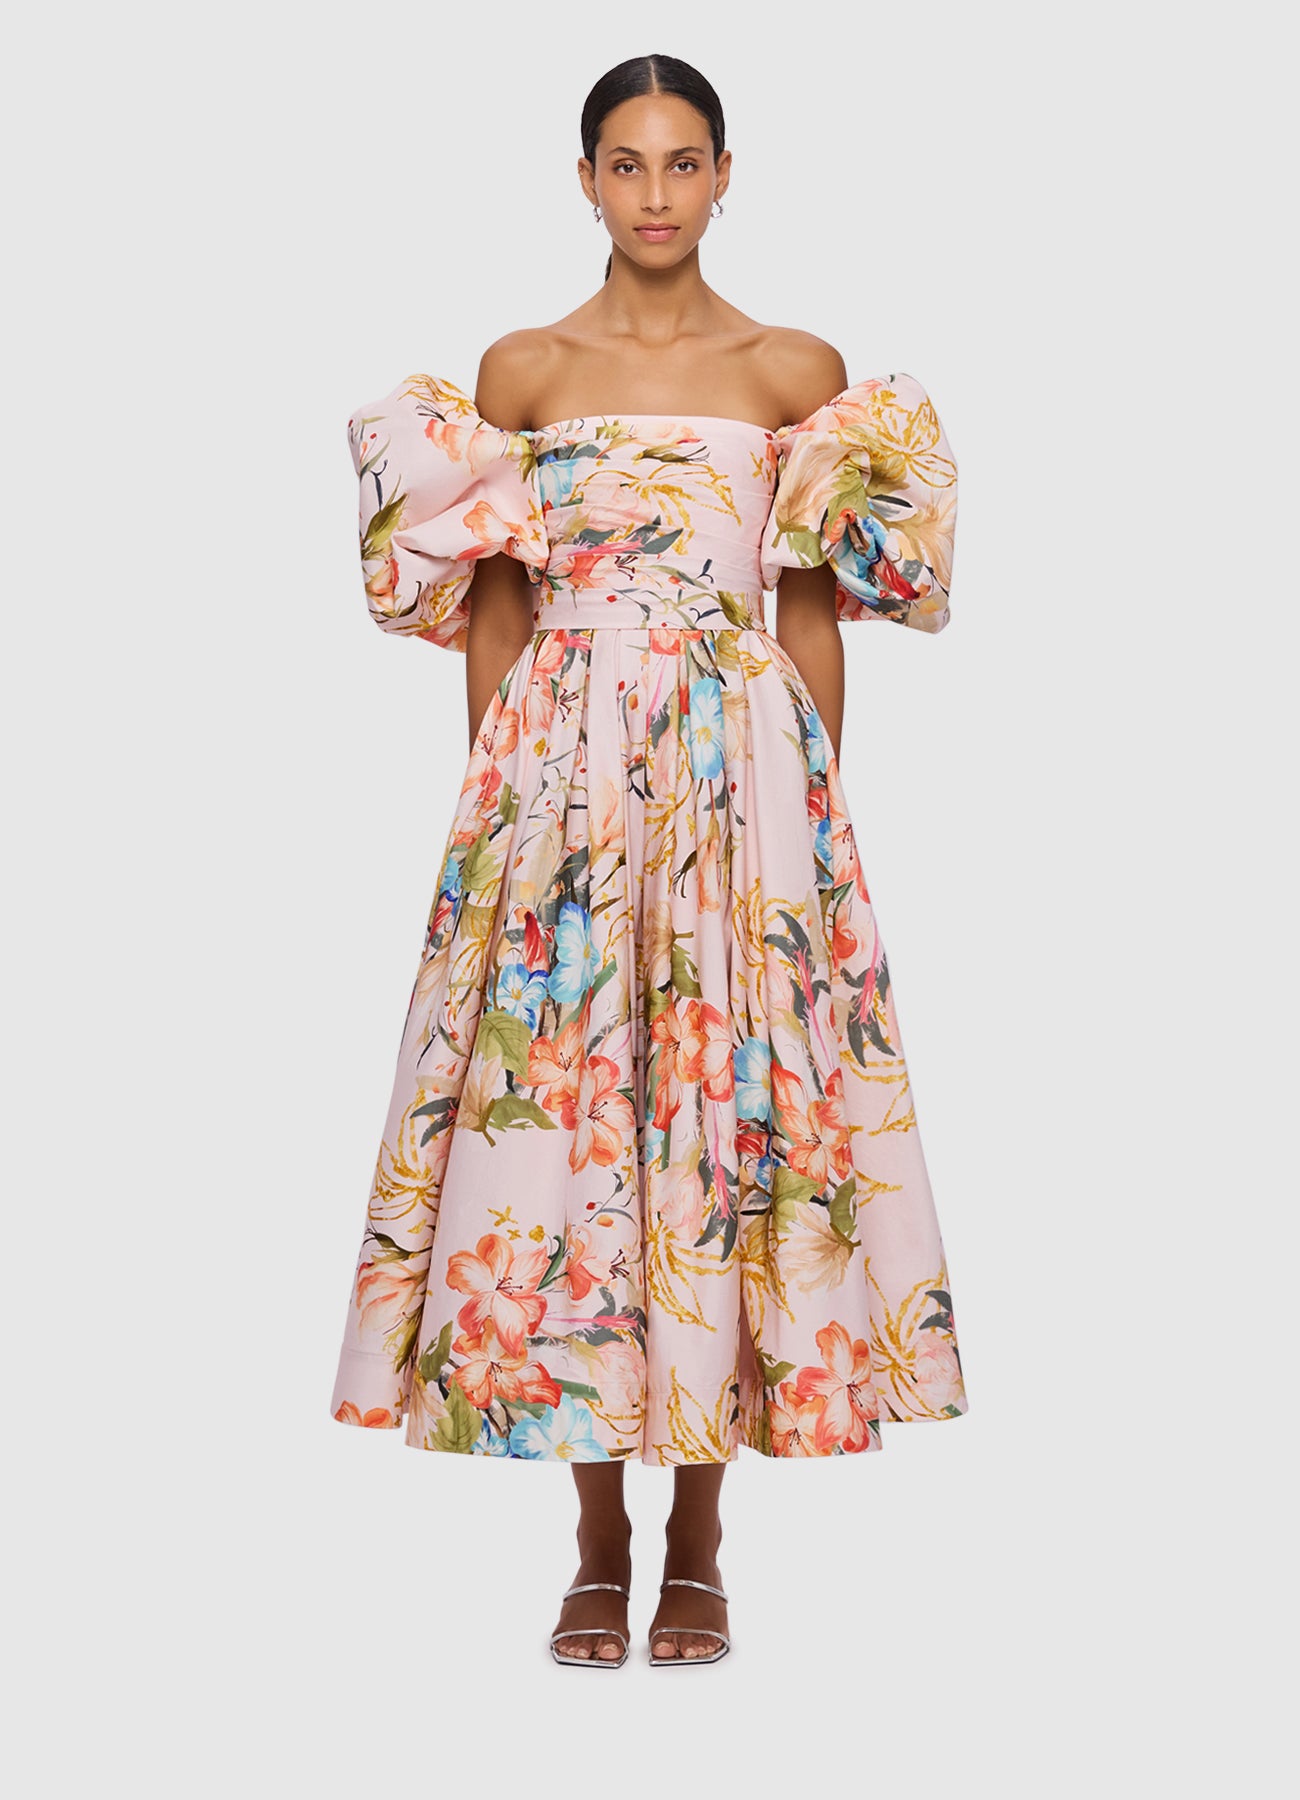 Matilda Puff Sleeve Midi Dress - Opulent Print in Blush | LEO LIN ...